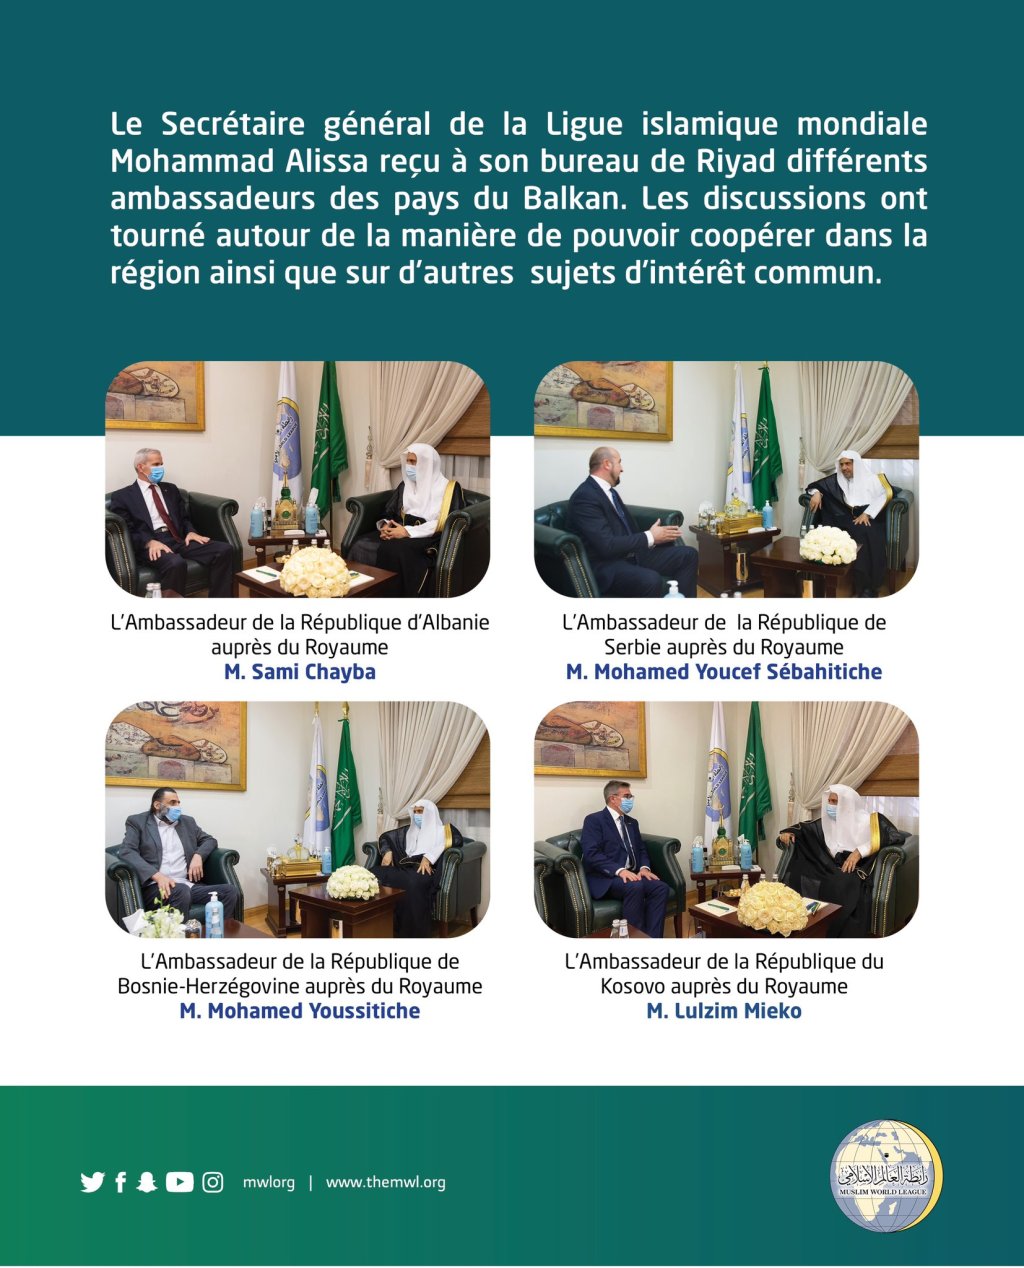 Le Secrétaire général de la Ligue Islamique Mondiale Mohammad Alissa reçoit différents ambassadeurs des pays du Balkan.